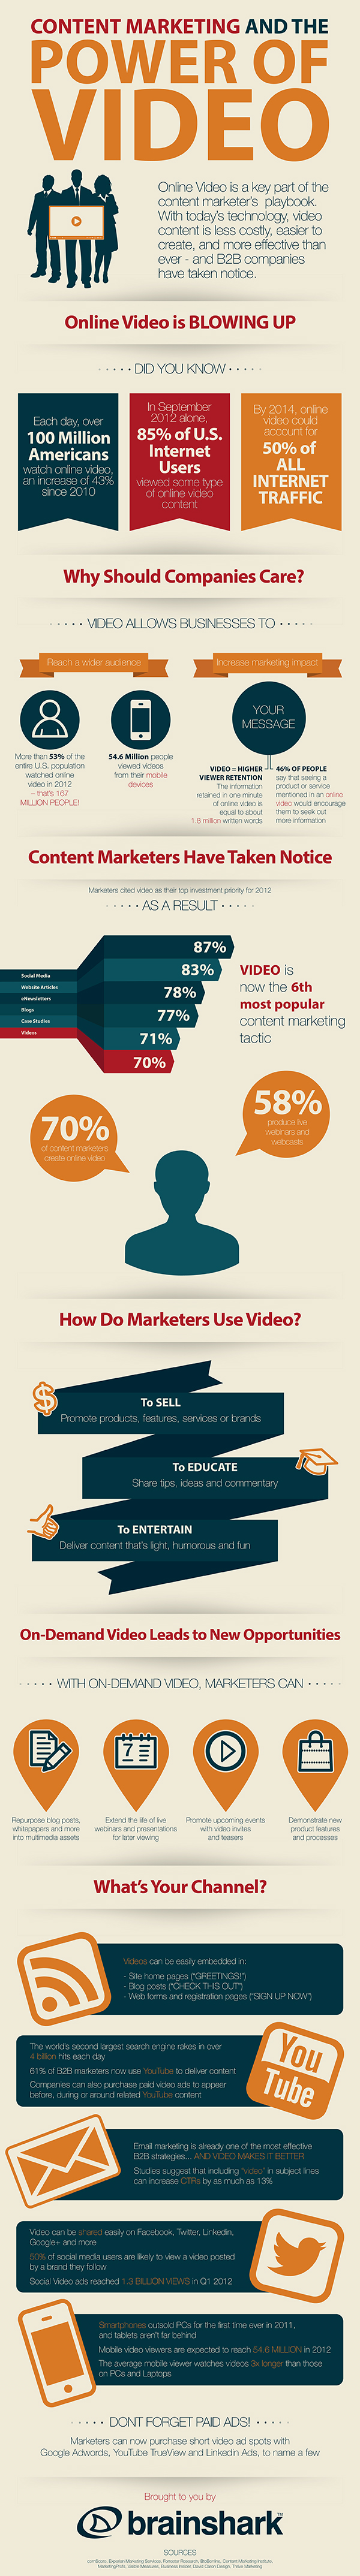 Infographie sur les vidéos comme content marketing